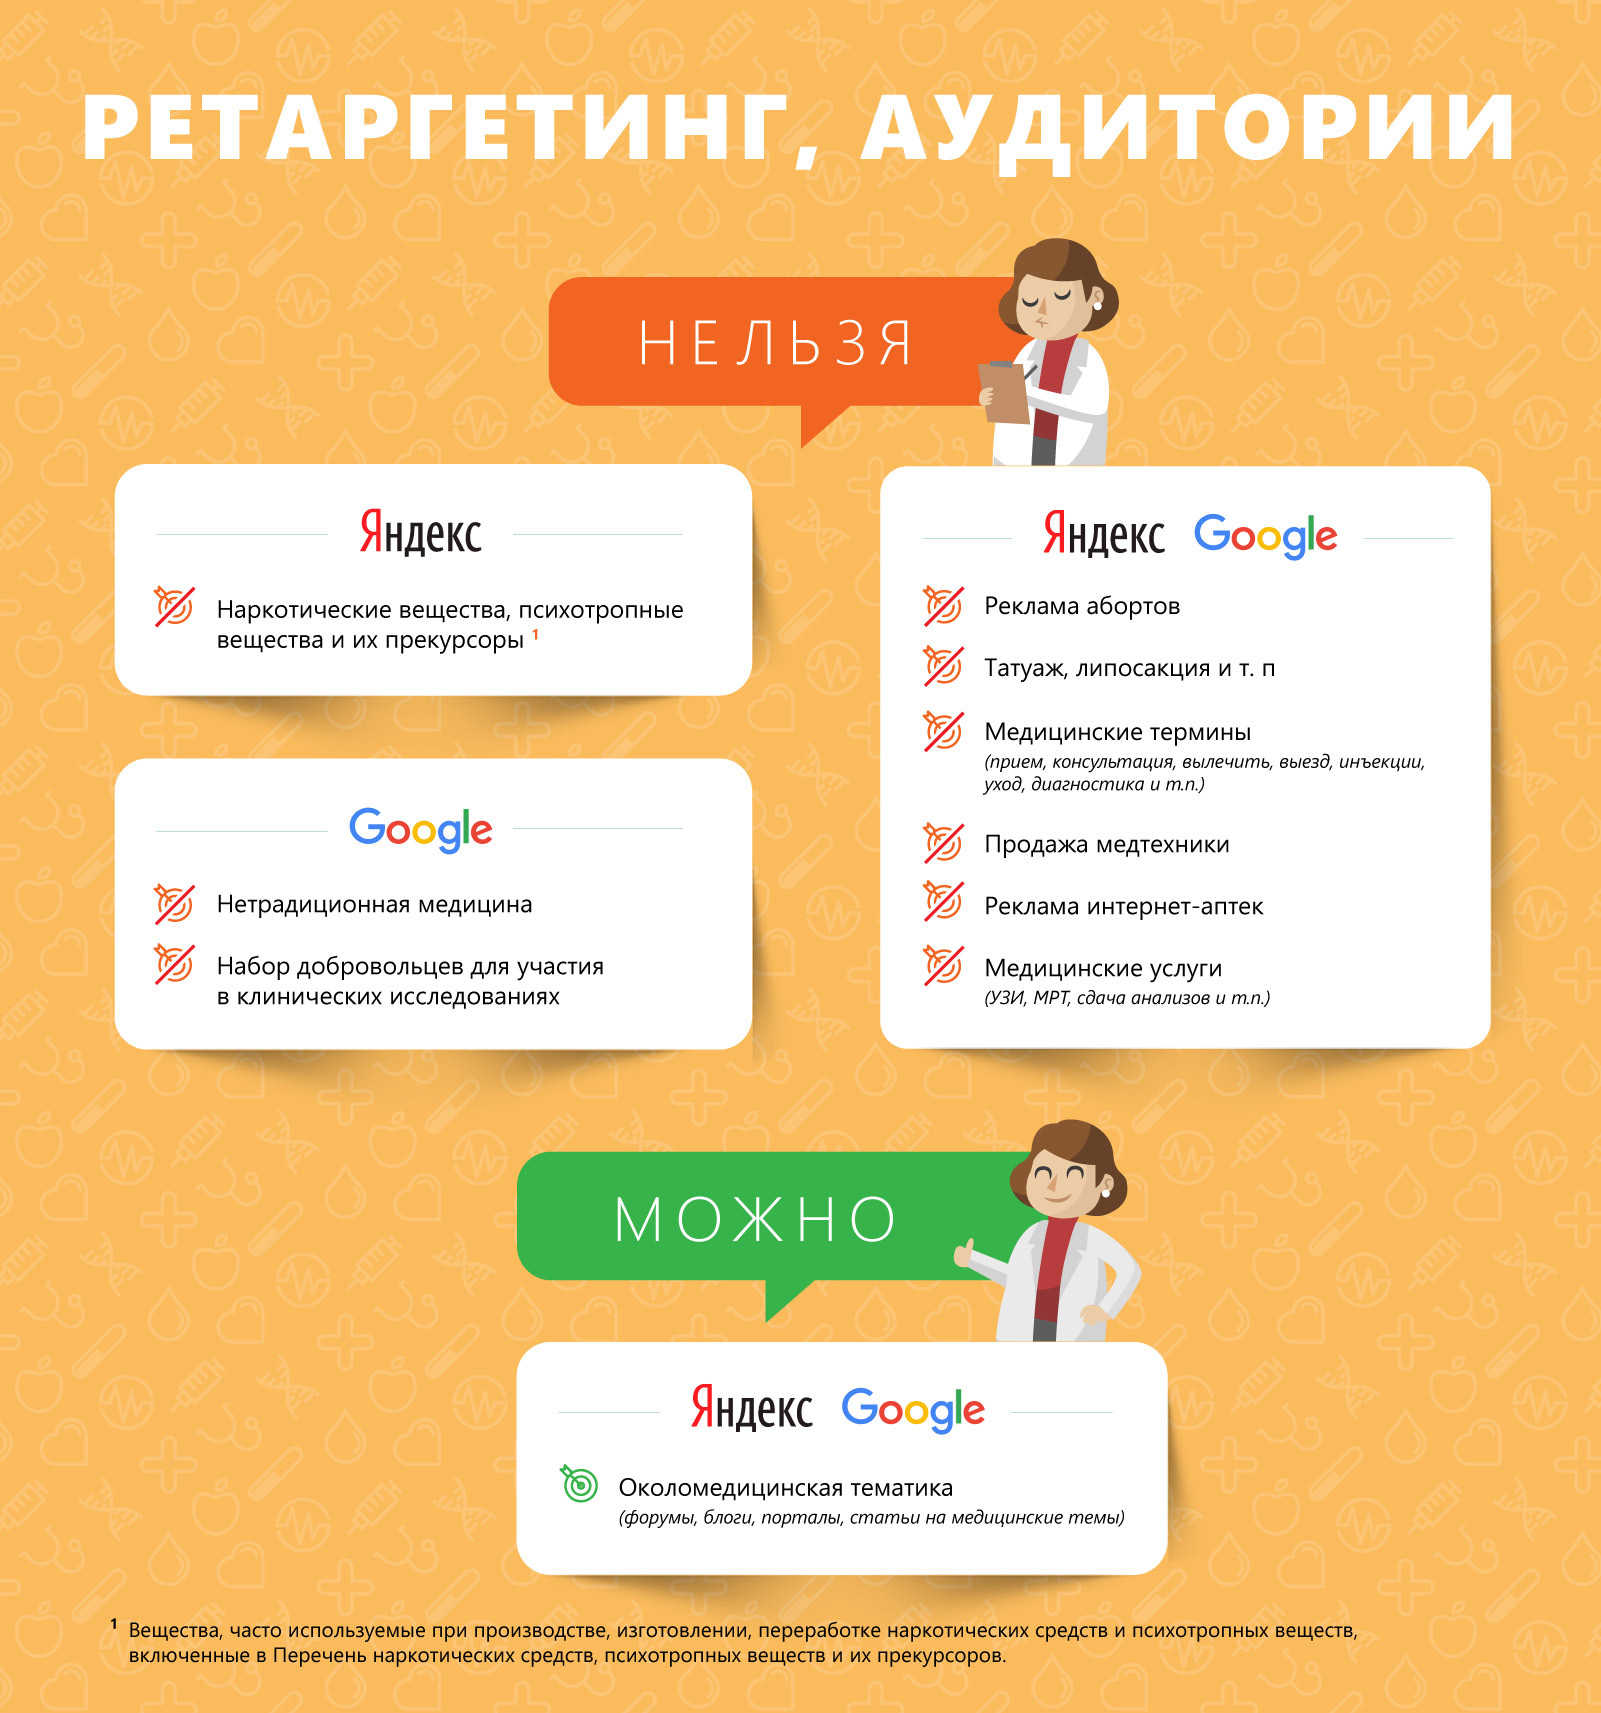 Тематики в ретаргетинге и списках аудиторий Яндекса и Google для медицины